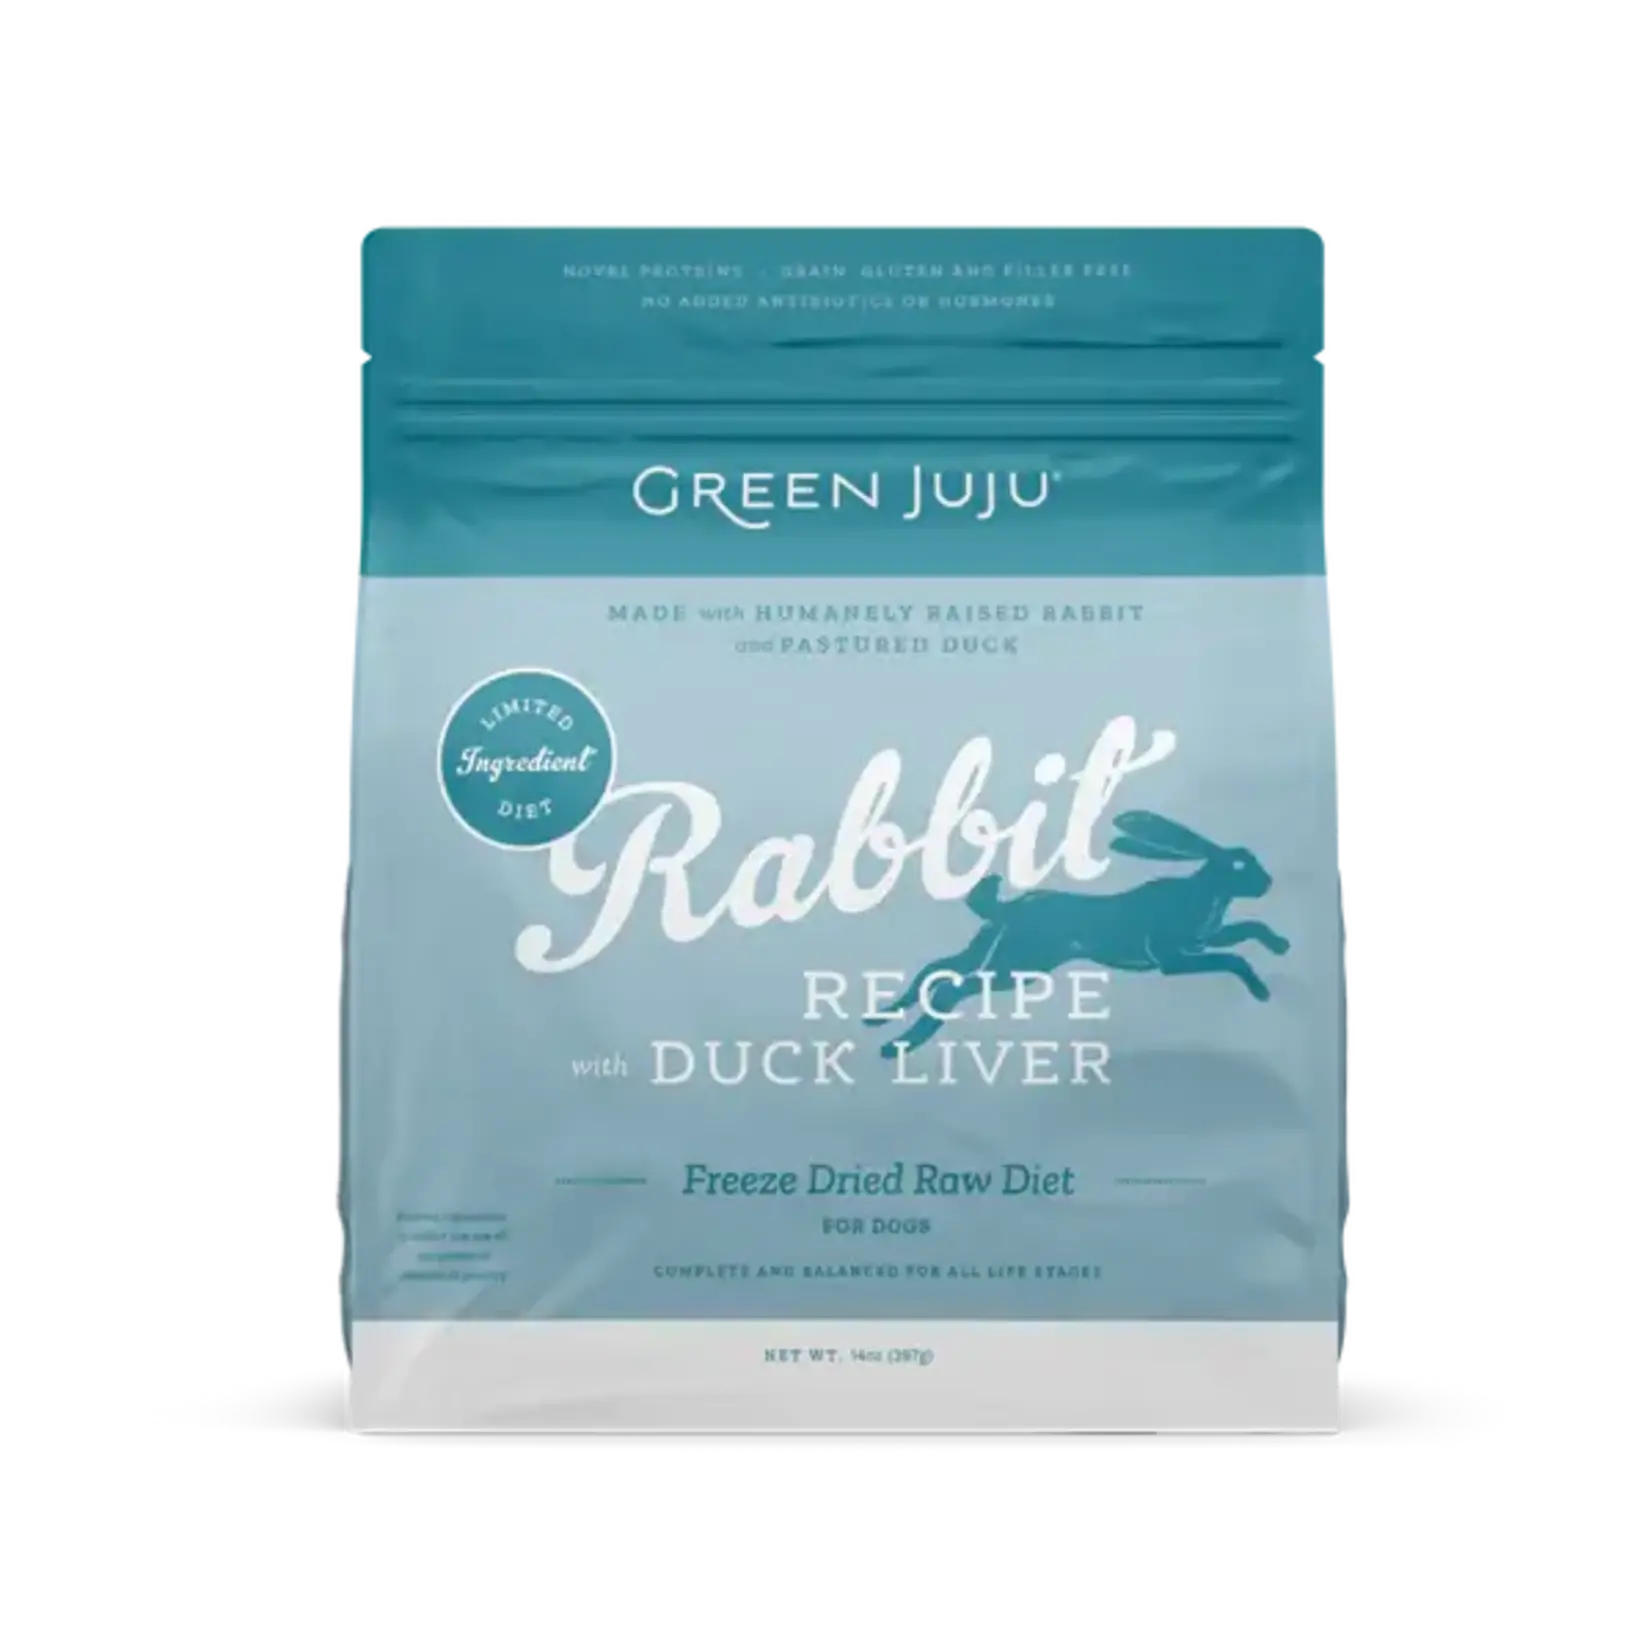 Green Juju Green Juju FD Dog Food Rabbit & Duck Liver Recipe 14 OZ